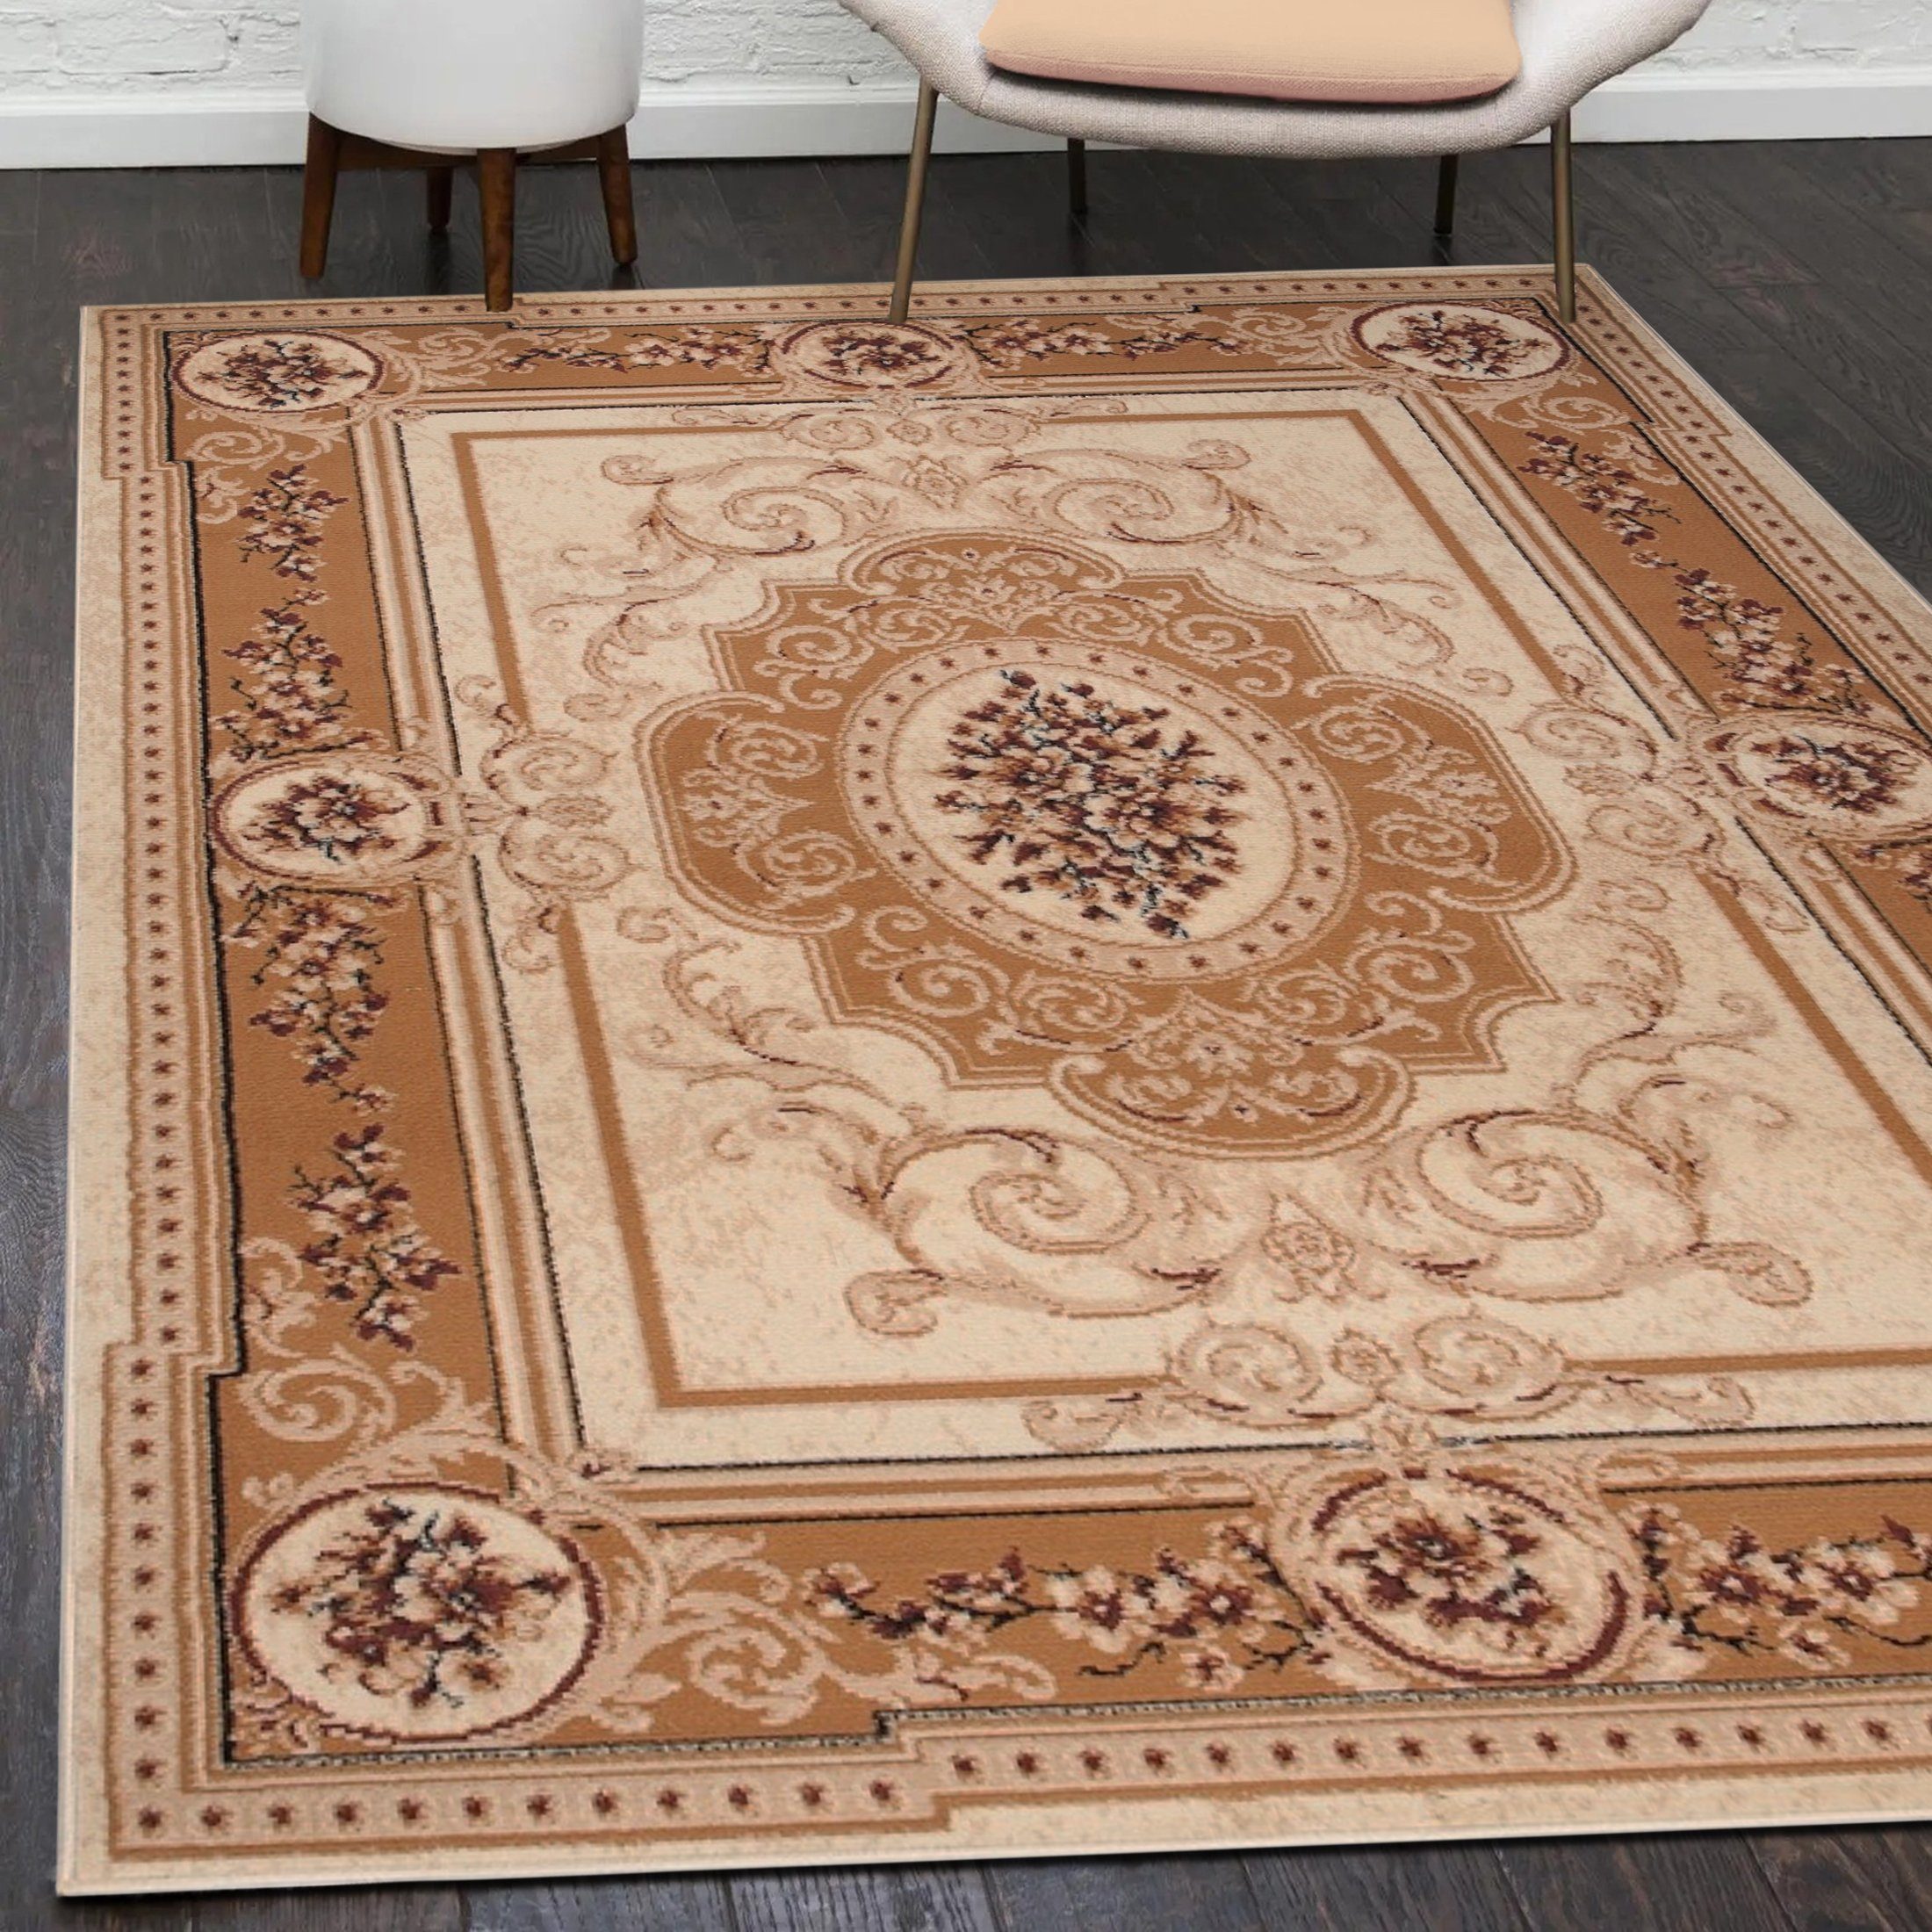 Orientteppich Orientalisch Vintage Teppich Kurzflor Wohnzimmerteppich Beige, Mazovia, 130 x 190 cm, Fußbodenheizung, Allergiker geeignet, Farbecht, Pflegeleicht Beige / F744A-CREAM